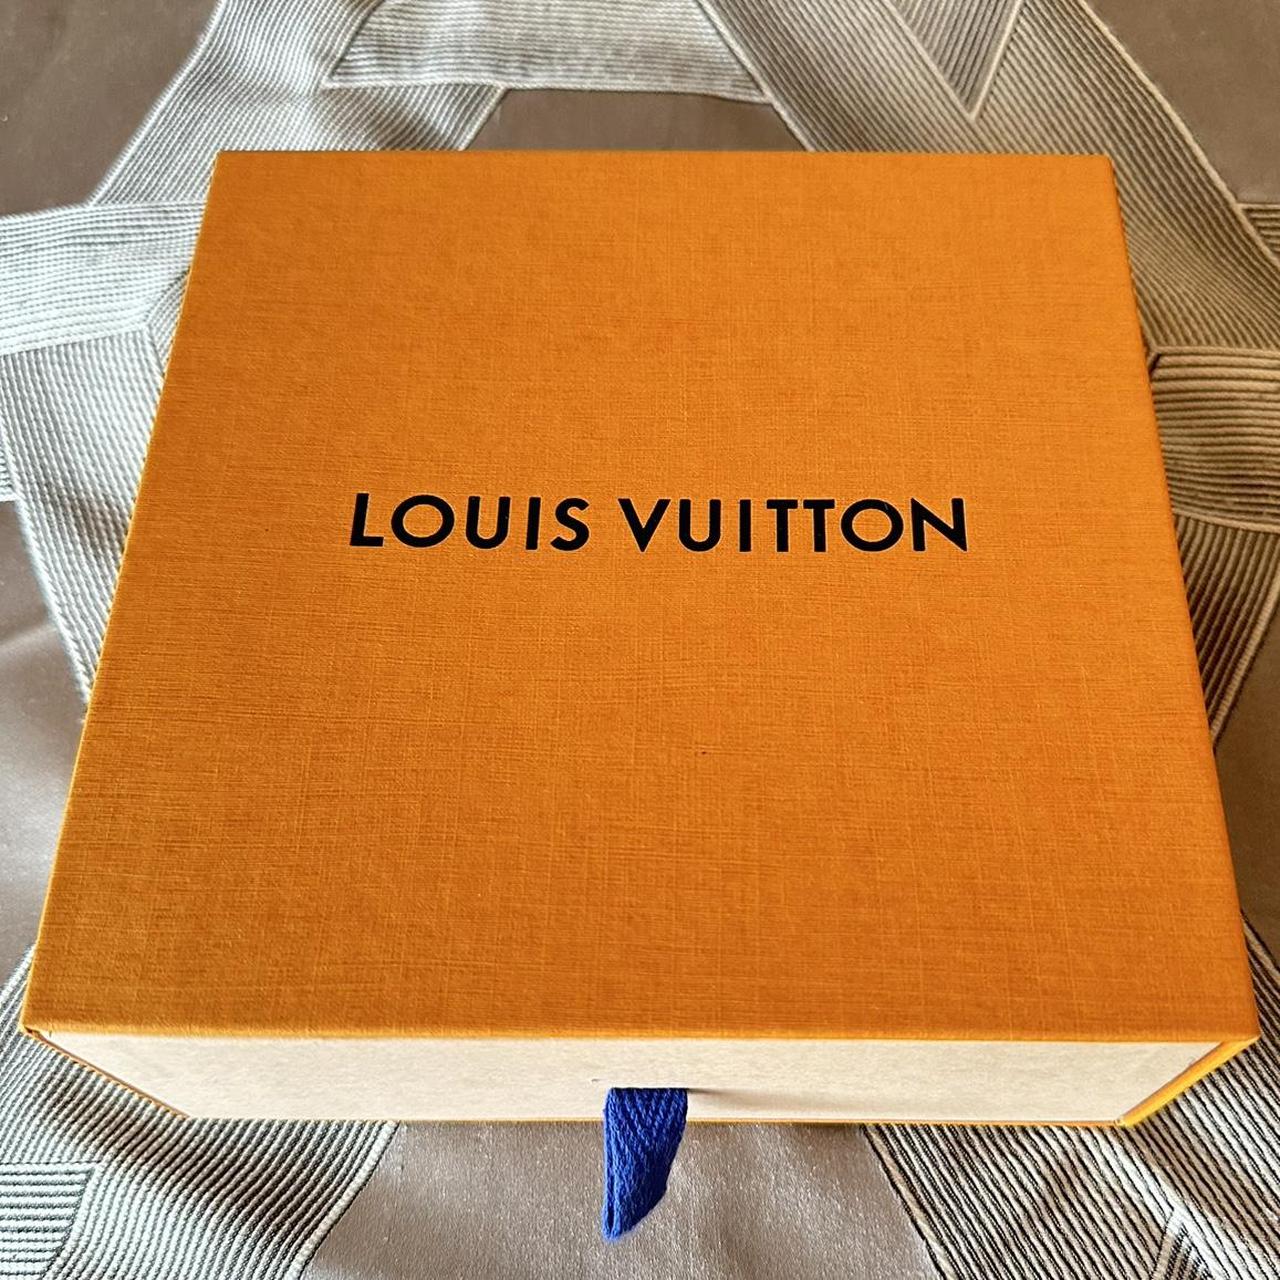 LOUIS VUITTON ORANGE SHOPPING BAG 100% AUTHENTIC - Depop